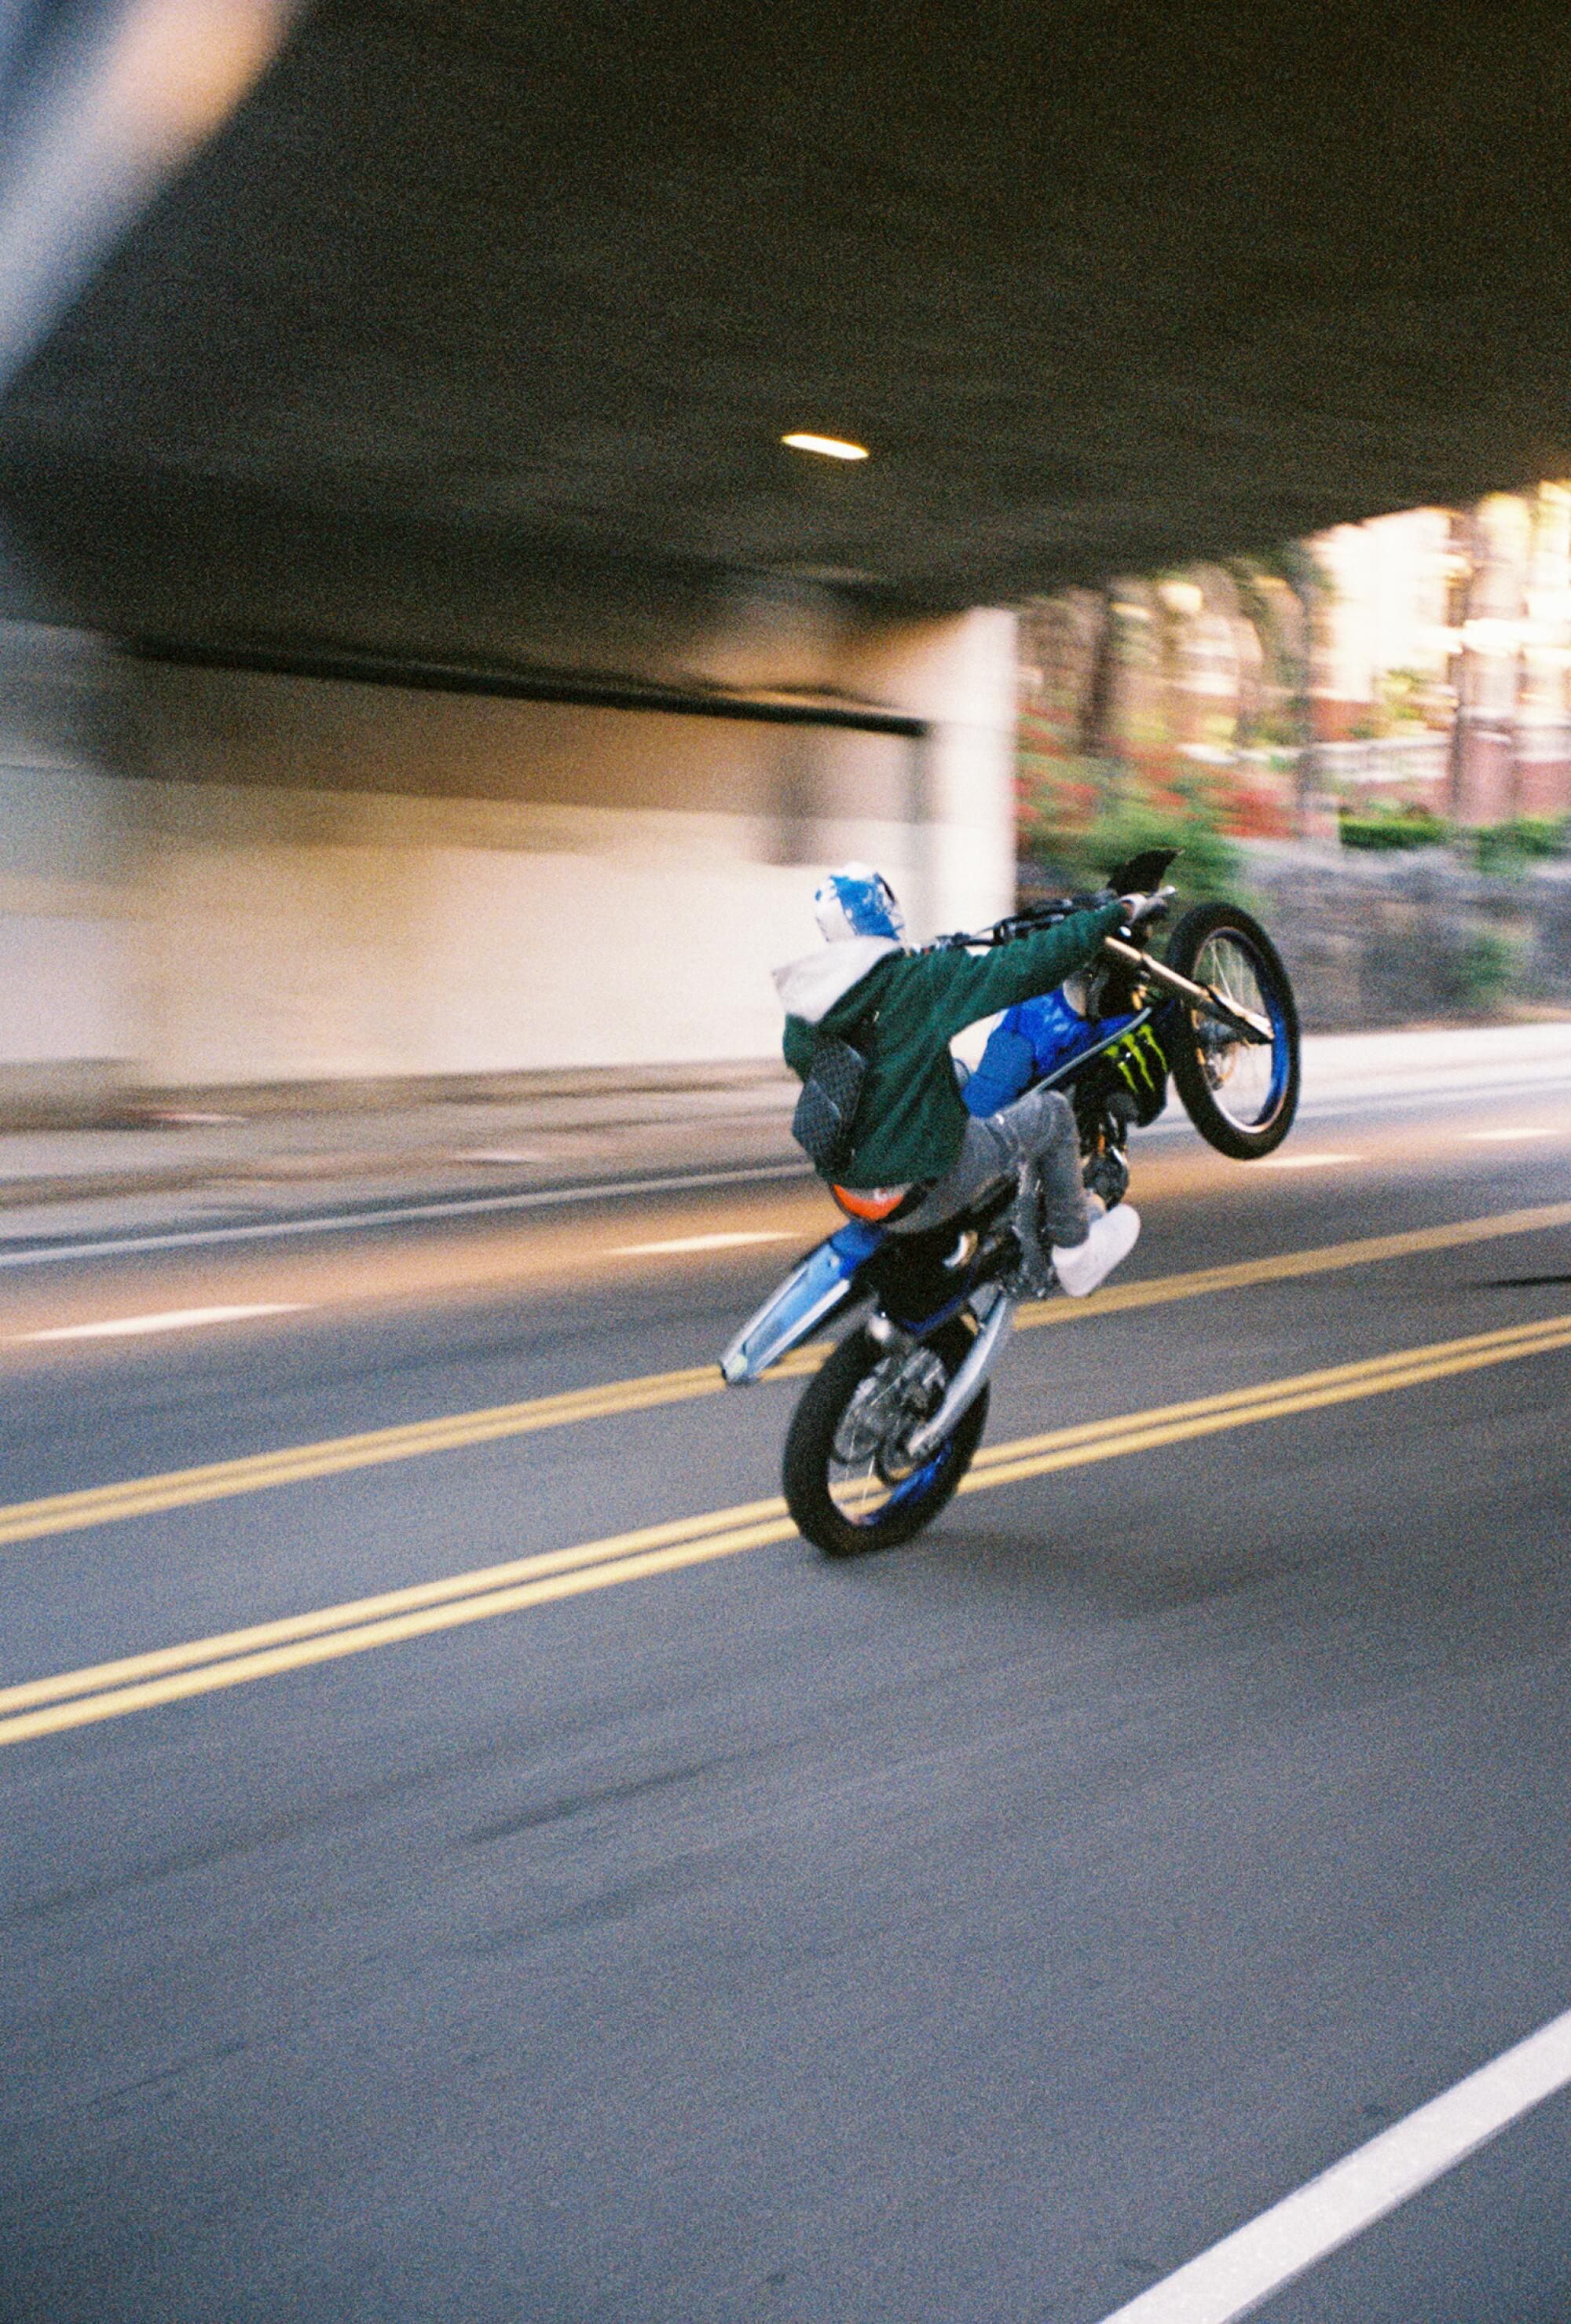 A biker pops a wheelie on a city street going under an underpass.